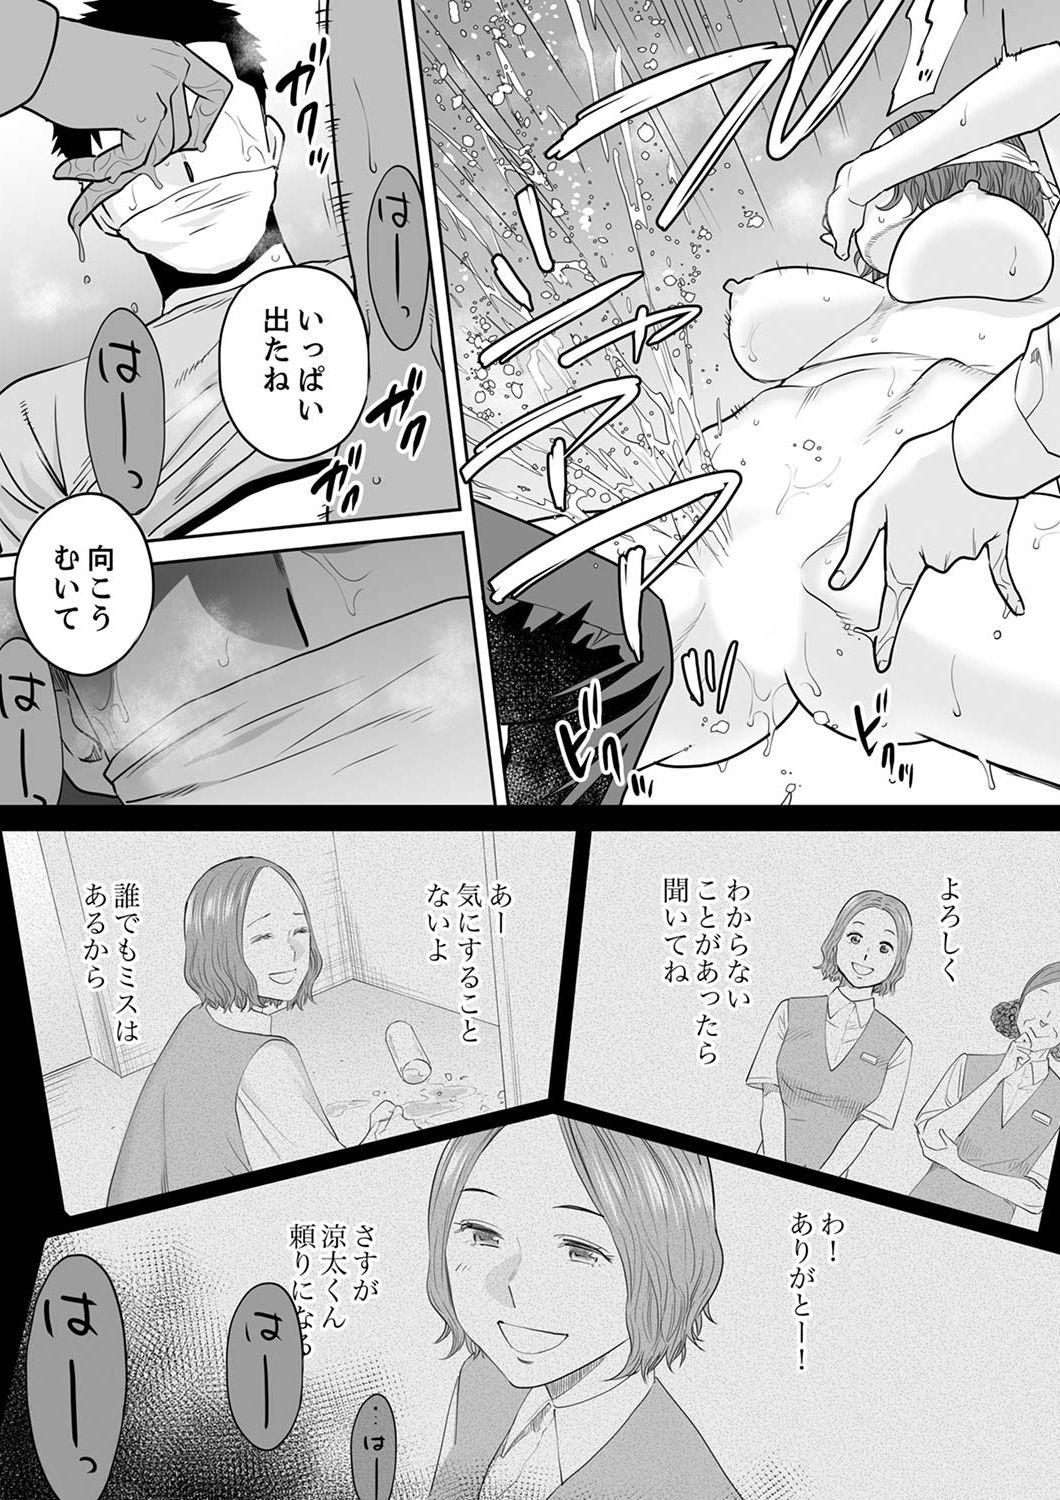 Strap On "Otto no Buka ni Ikasarechau..." Aragaezu Kanjite Shimau Furinzuma 12 Hard - Page 9